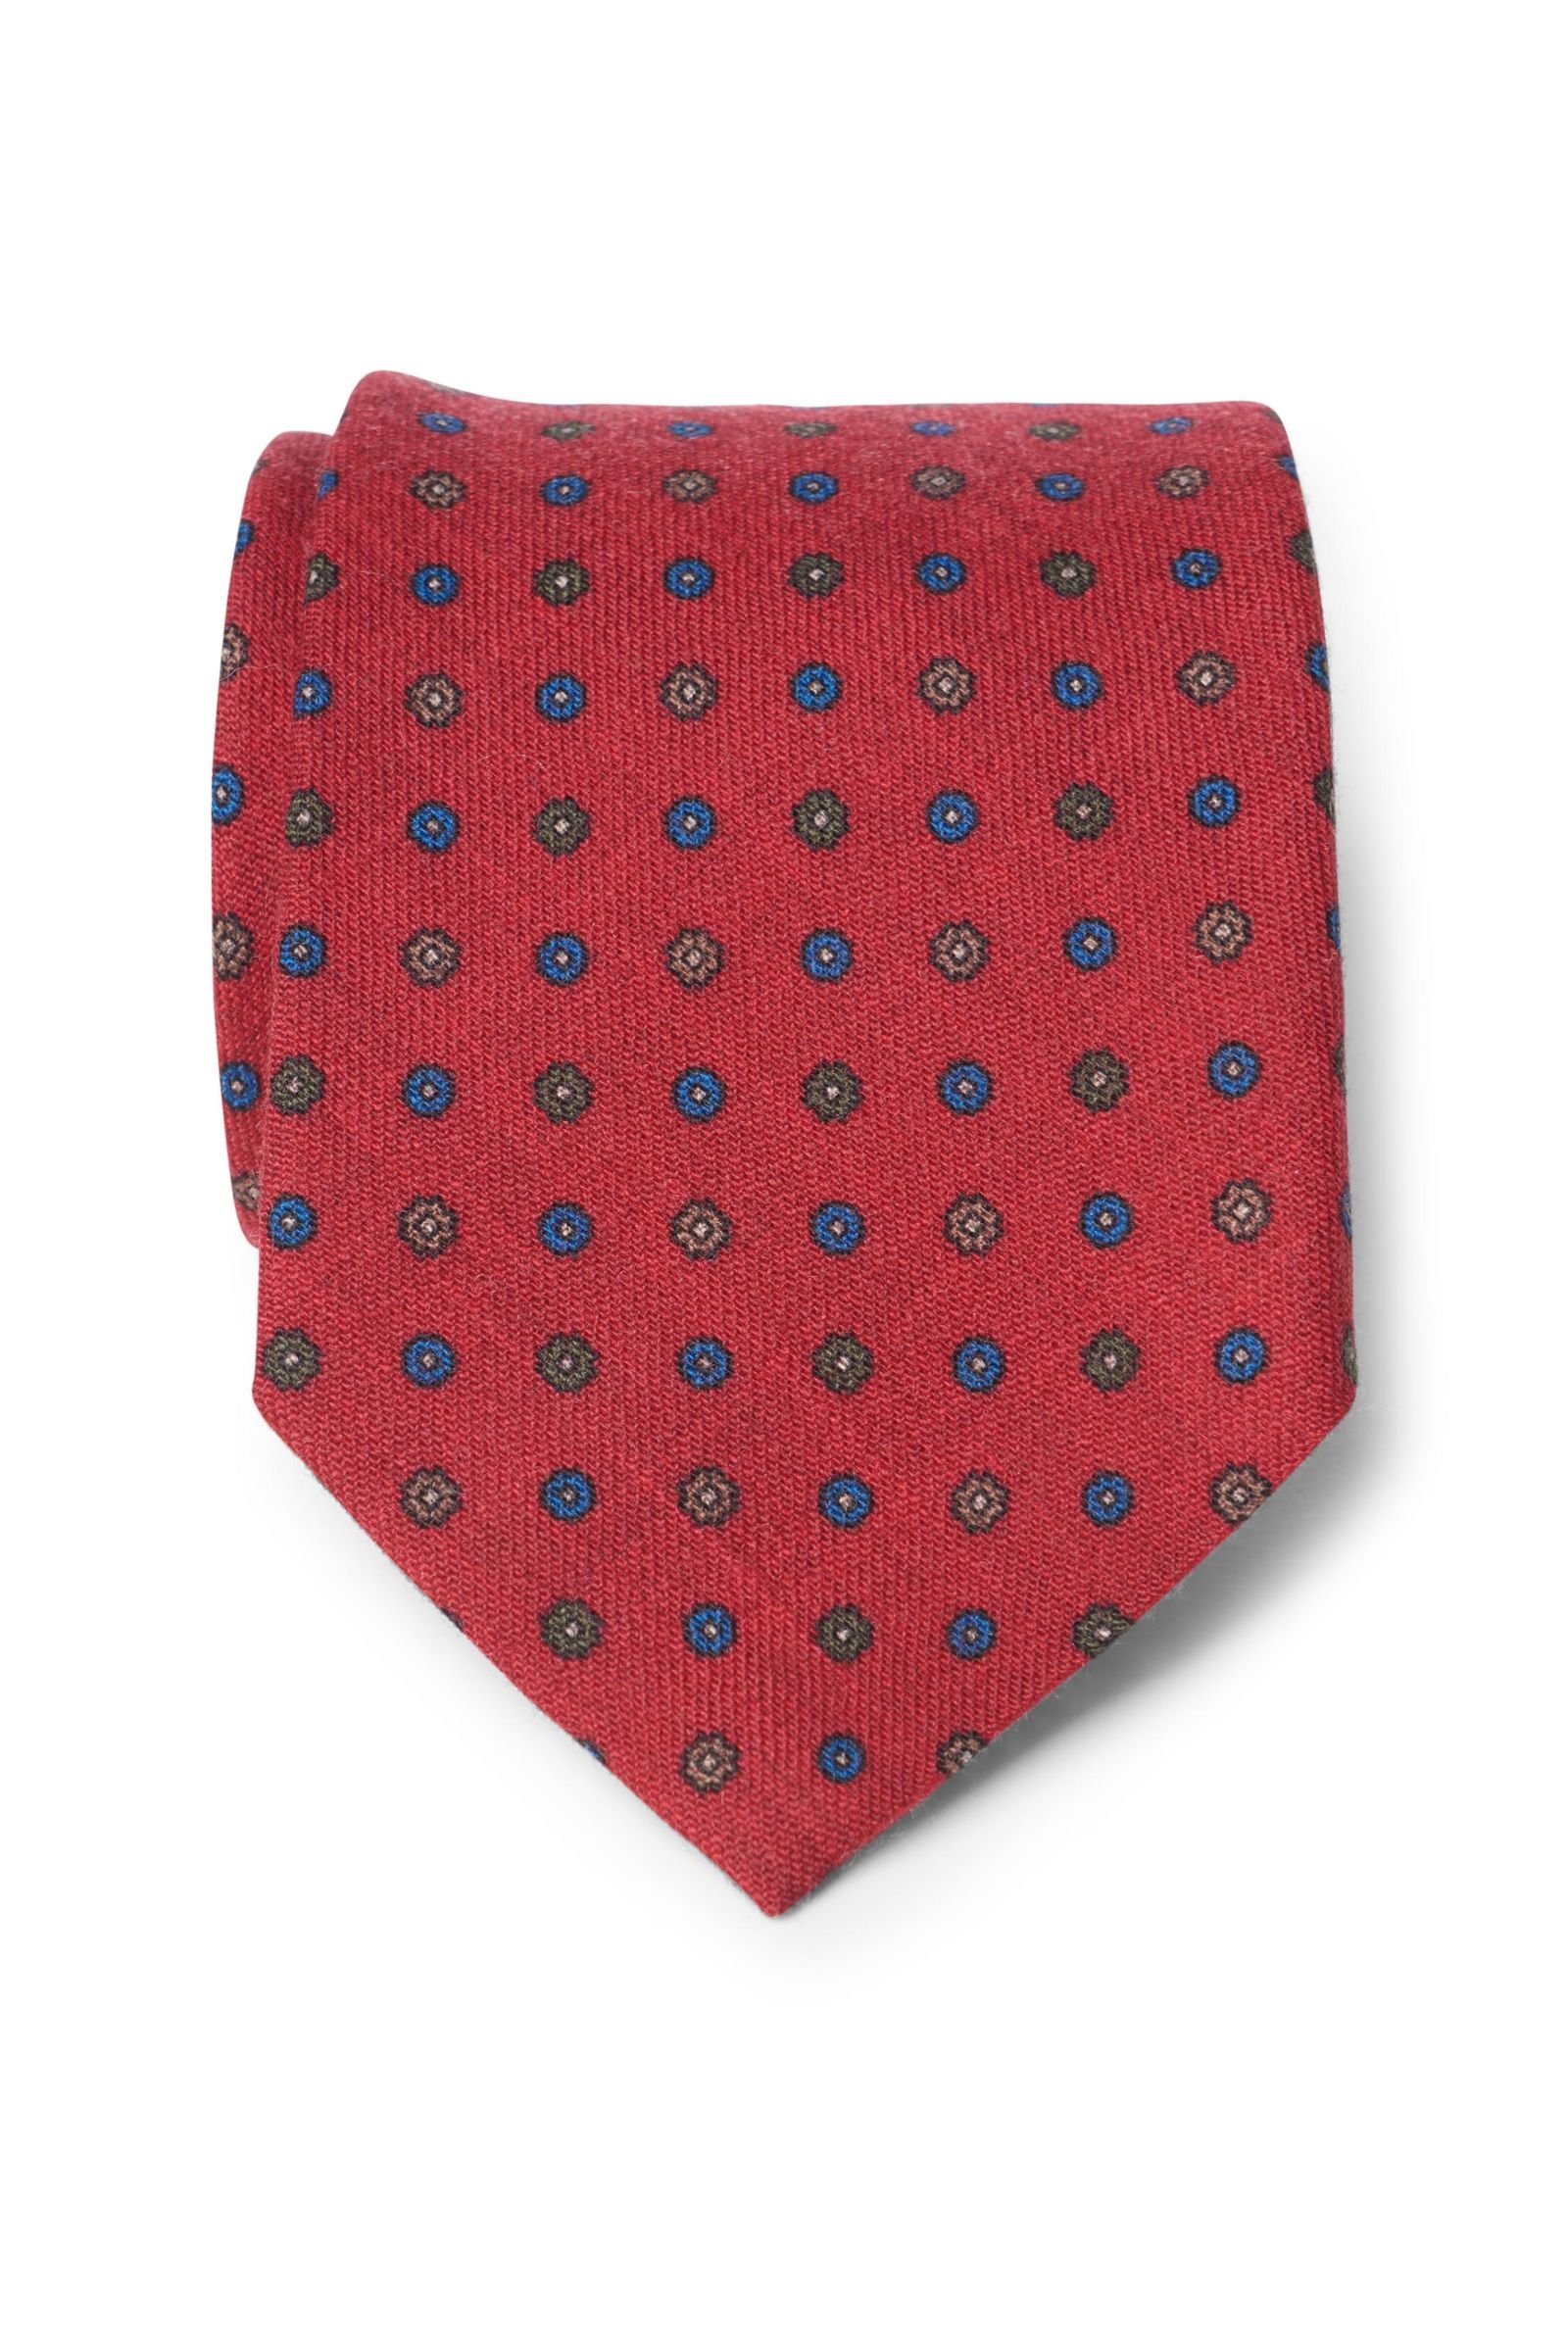 Wool tie dark red patterned